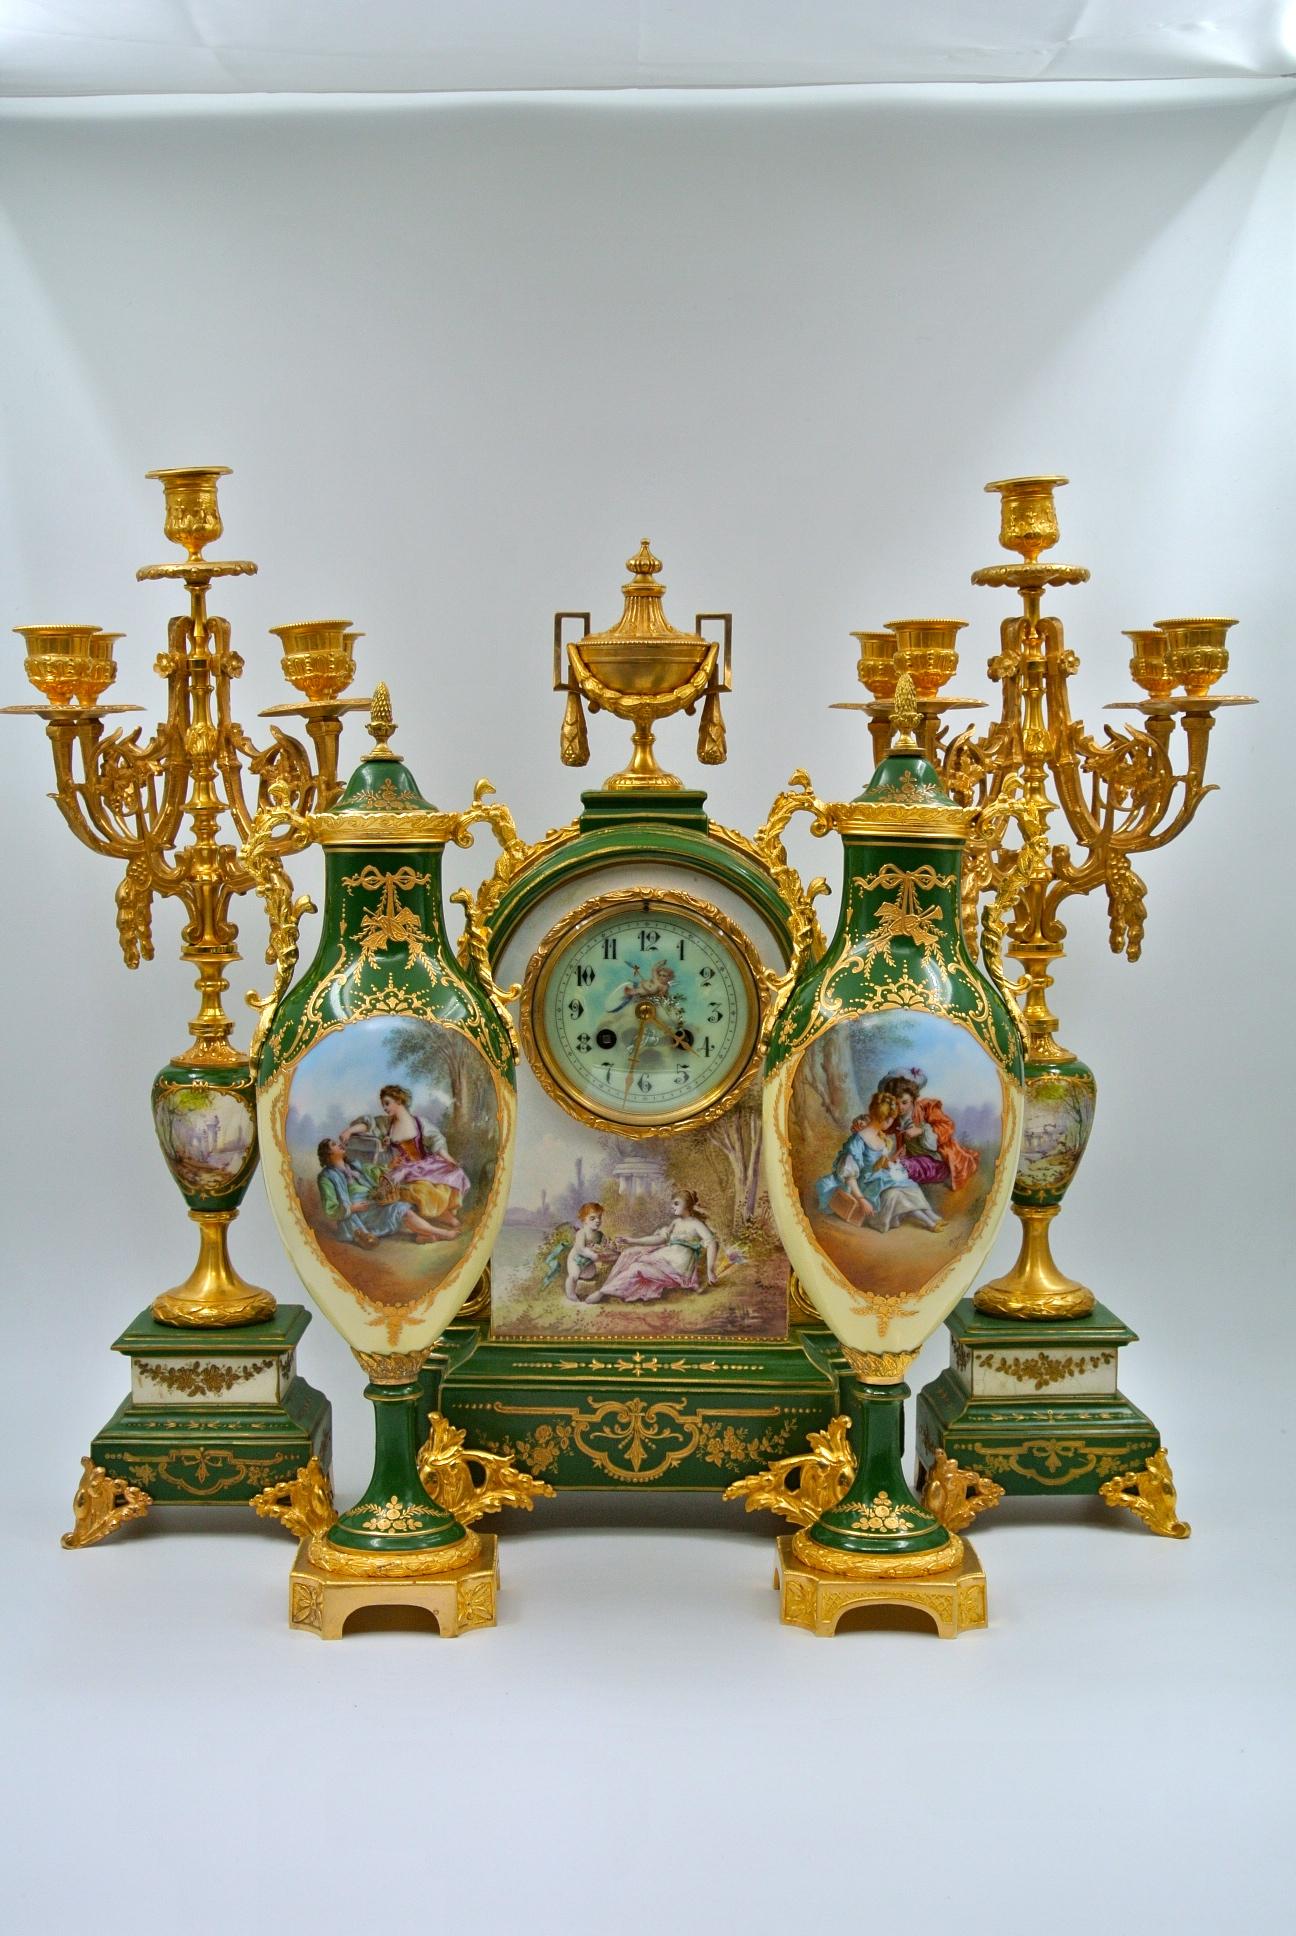 Important mantel set in painted and gilded bronze porcelain, Napoleon III period, 19th century.
Measures: Clock: H 50 cm, W 29 cm, D 16 cm
Candelabra: H 52 cm, W 19 cm, D 20 cm
Cassolettes: H 42 cm, W 14 cm, D 14 cm.